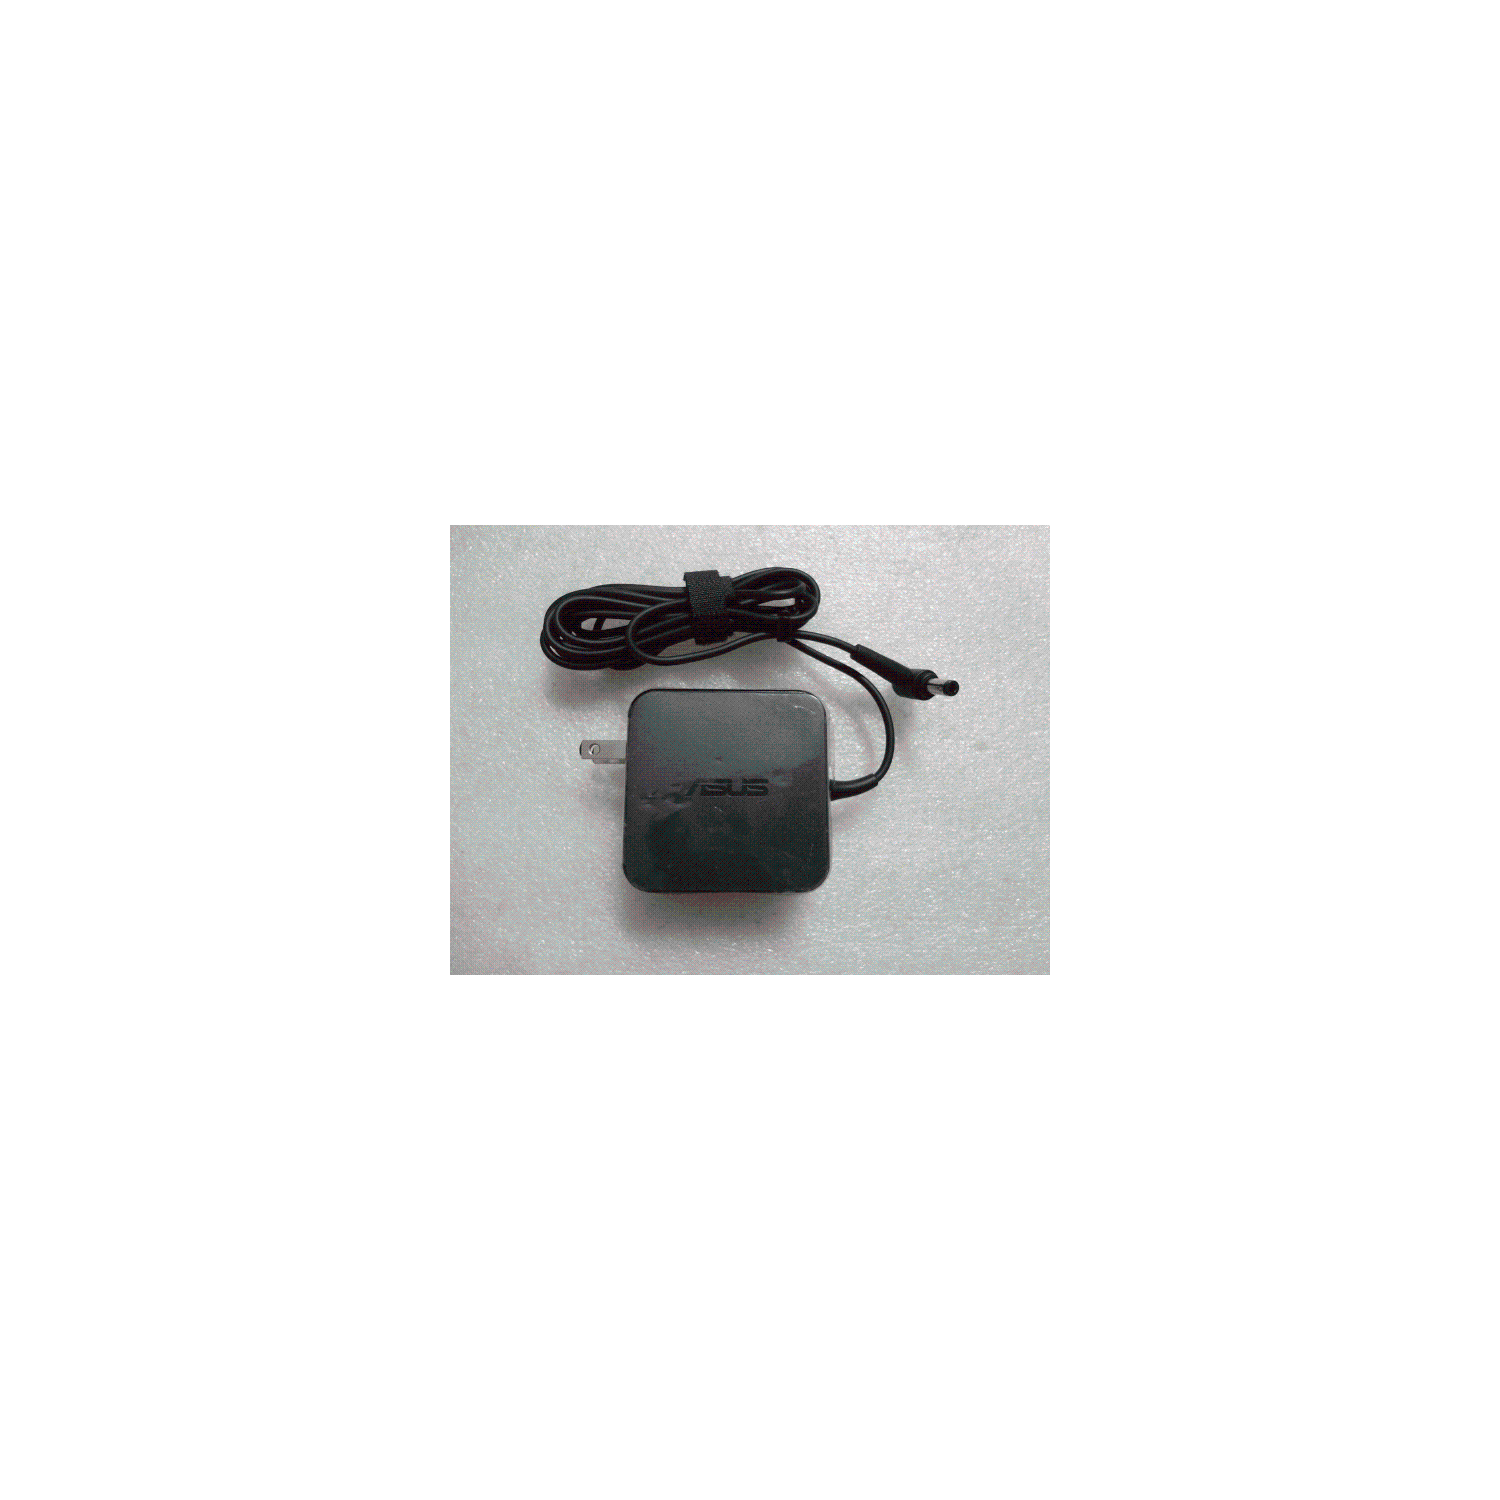 Adaptor Charger Asus D550CA Q501 Q501LA X450JN X450LAV X450LD